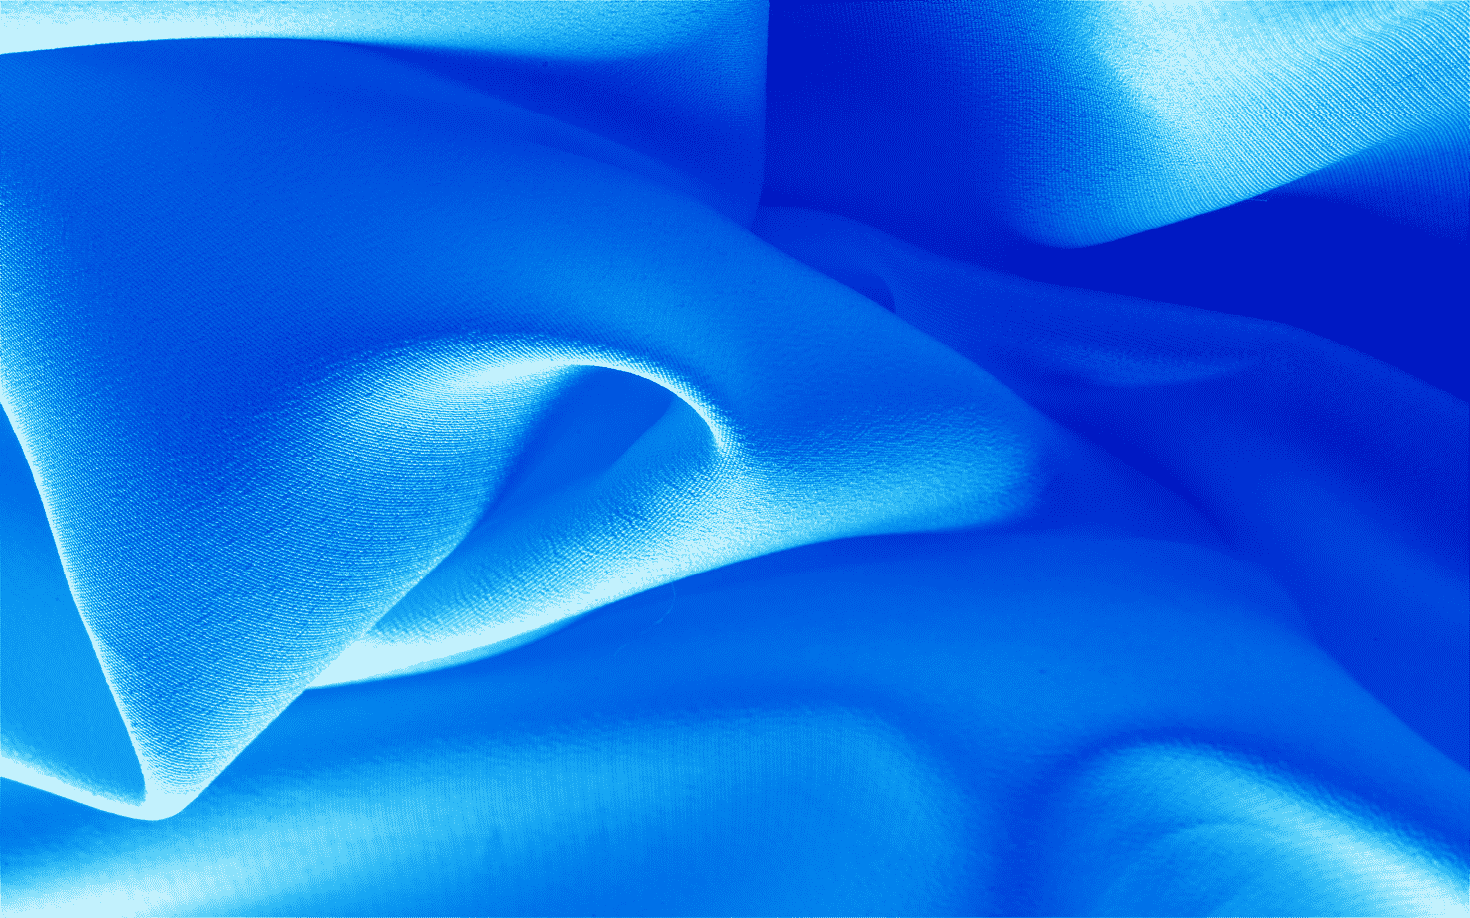 Ilustração que mostra a textura de um tecido Oxford na cor azul